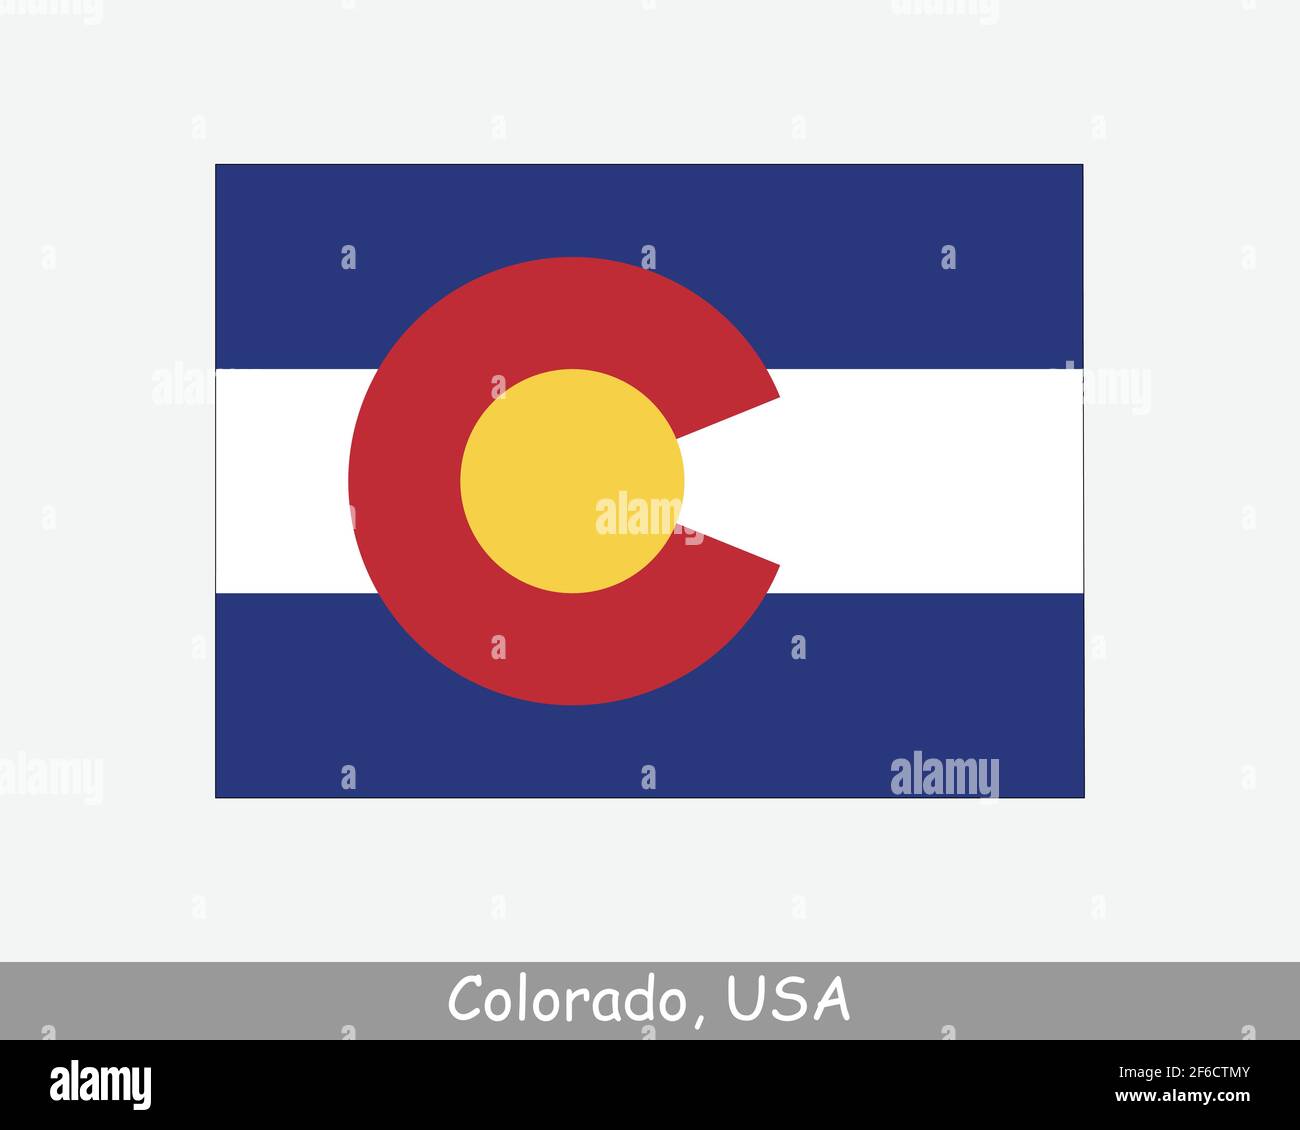 Colorado Karte Flagge. Karte von CO, USA mit isolierter Staatsflagge auf weißem Hintergrund. Vereinigte Staaten, Amerika, Amerikaner, Vereinigte Staaten von Amerika, US Sta Stock Vektor